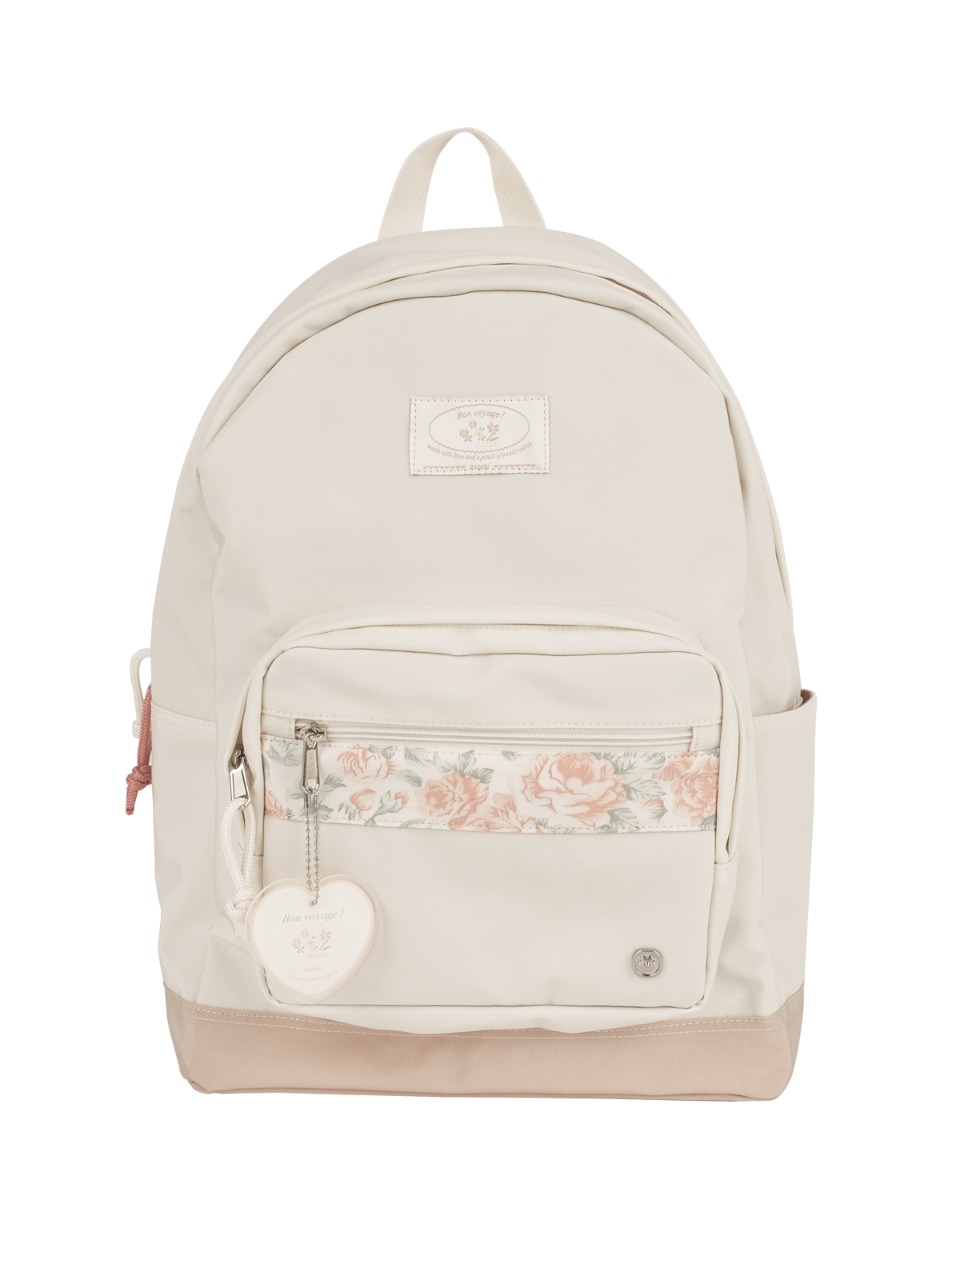 Bon voyage backpack - vintage rose - ovuni